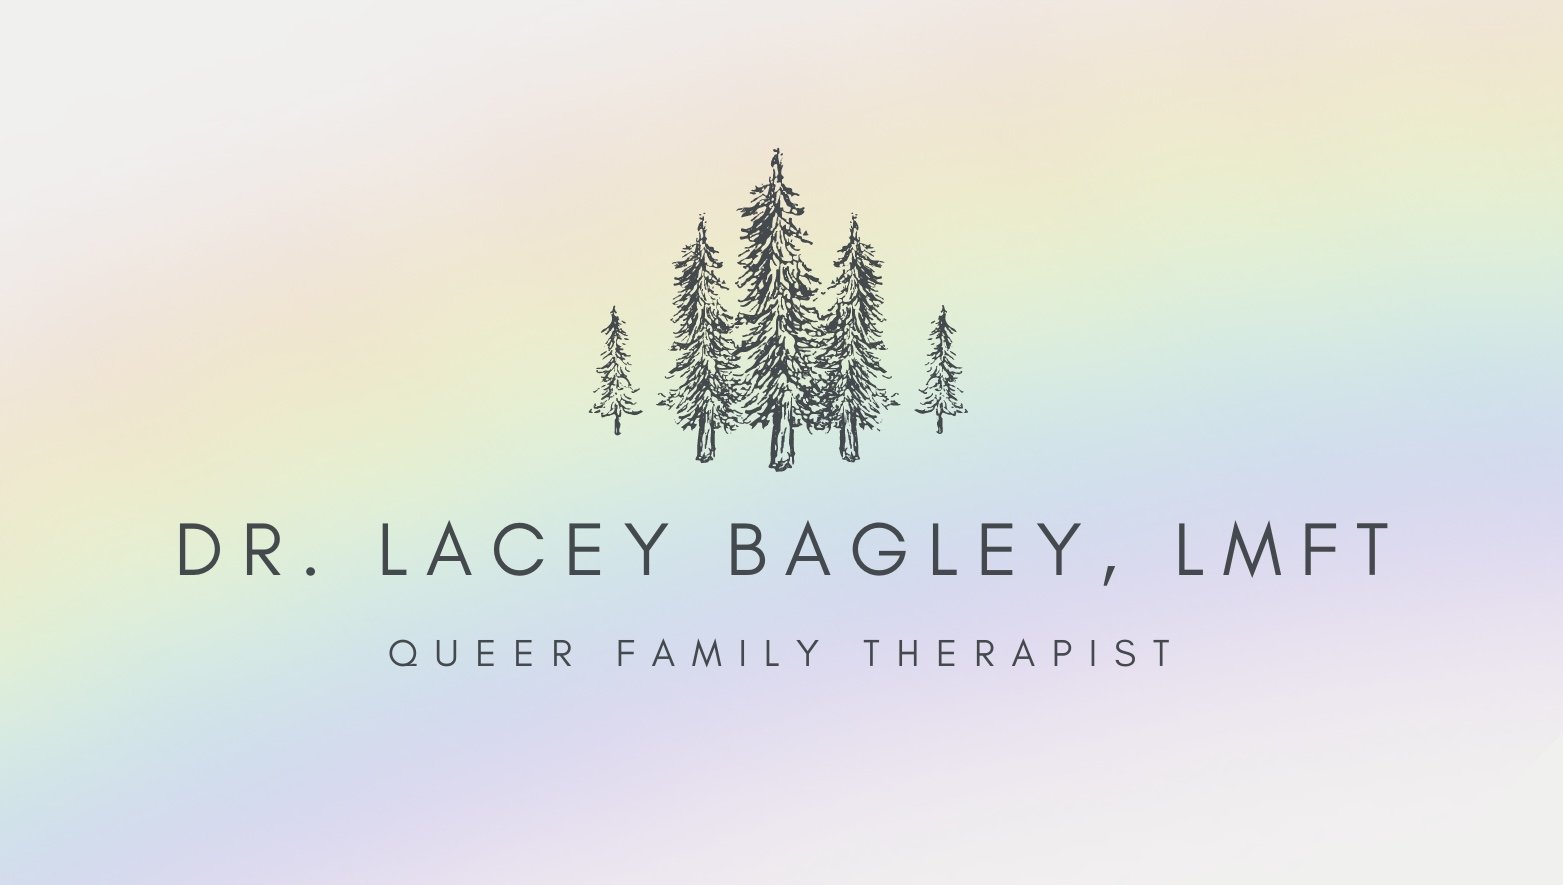 Dr. Lacey Bagley, LMFT